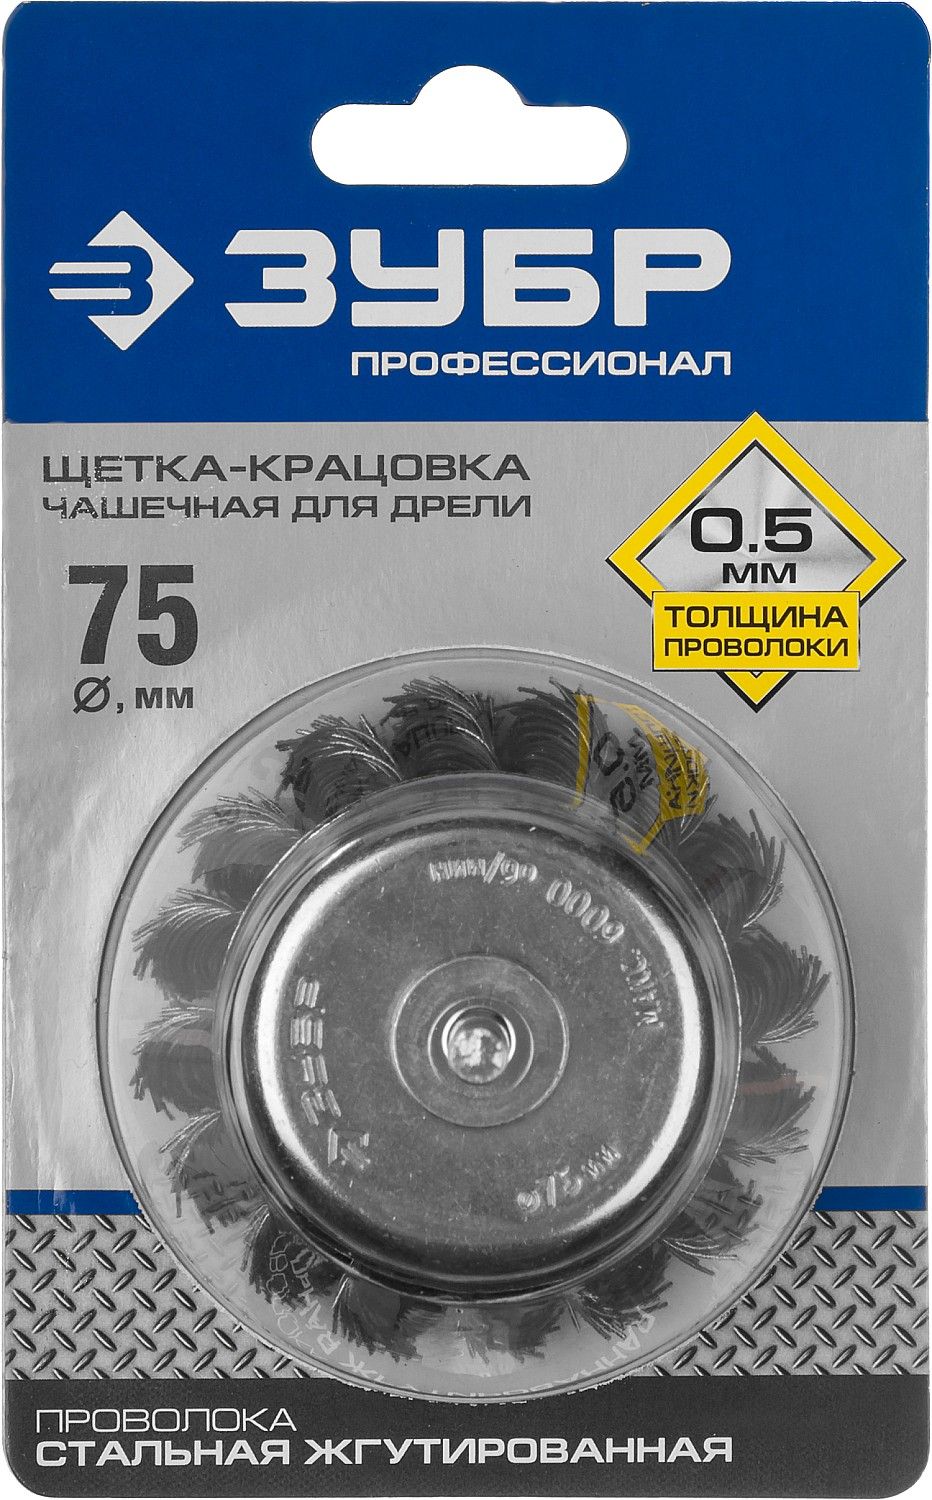 Щетка дисковая Зубр Профессионал 3522-075_z02 для дрели, жгутированная стальная проволока 0,5мм, 75мм